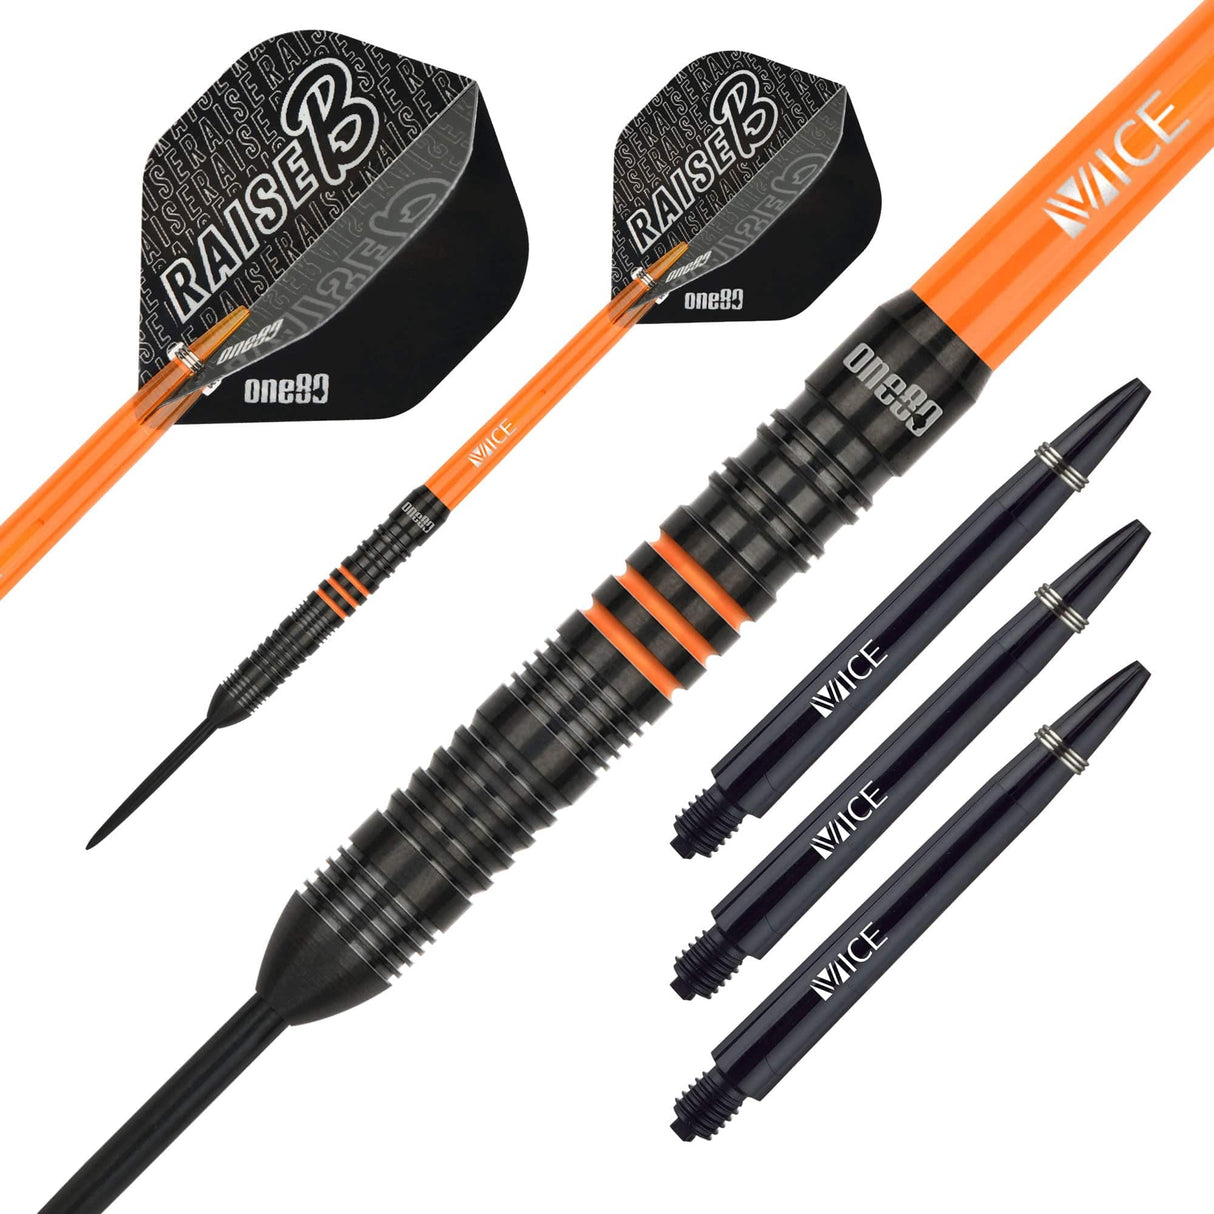 One80 Raise B Darts - Steel Tip - Black - Orange Rings